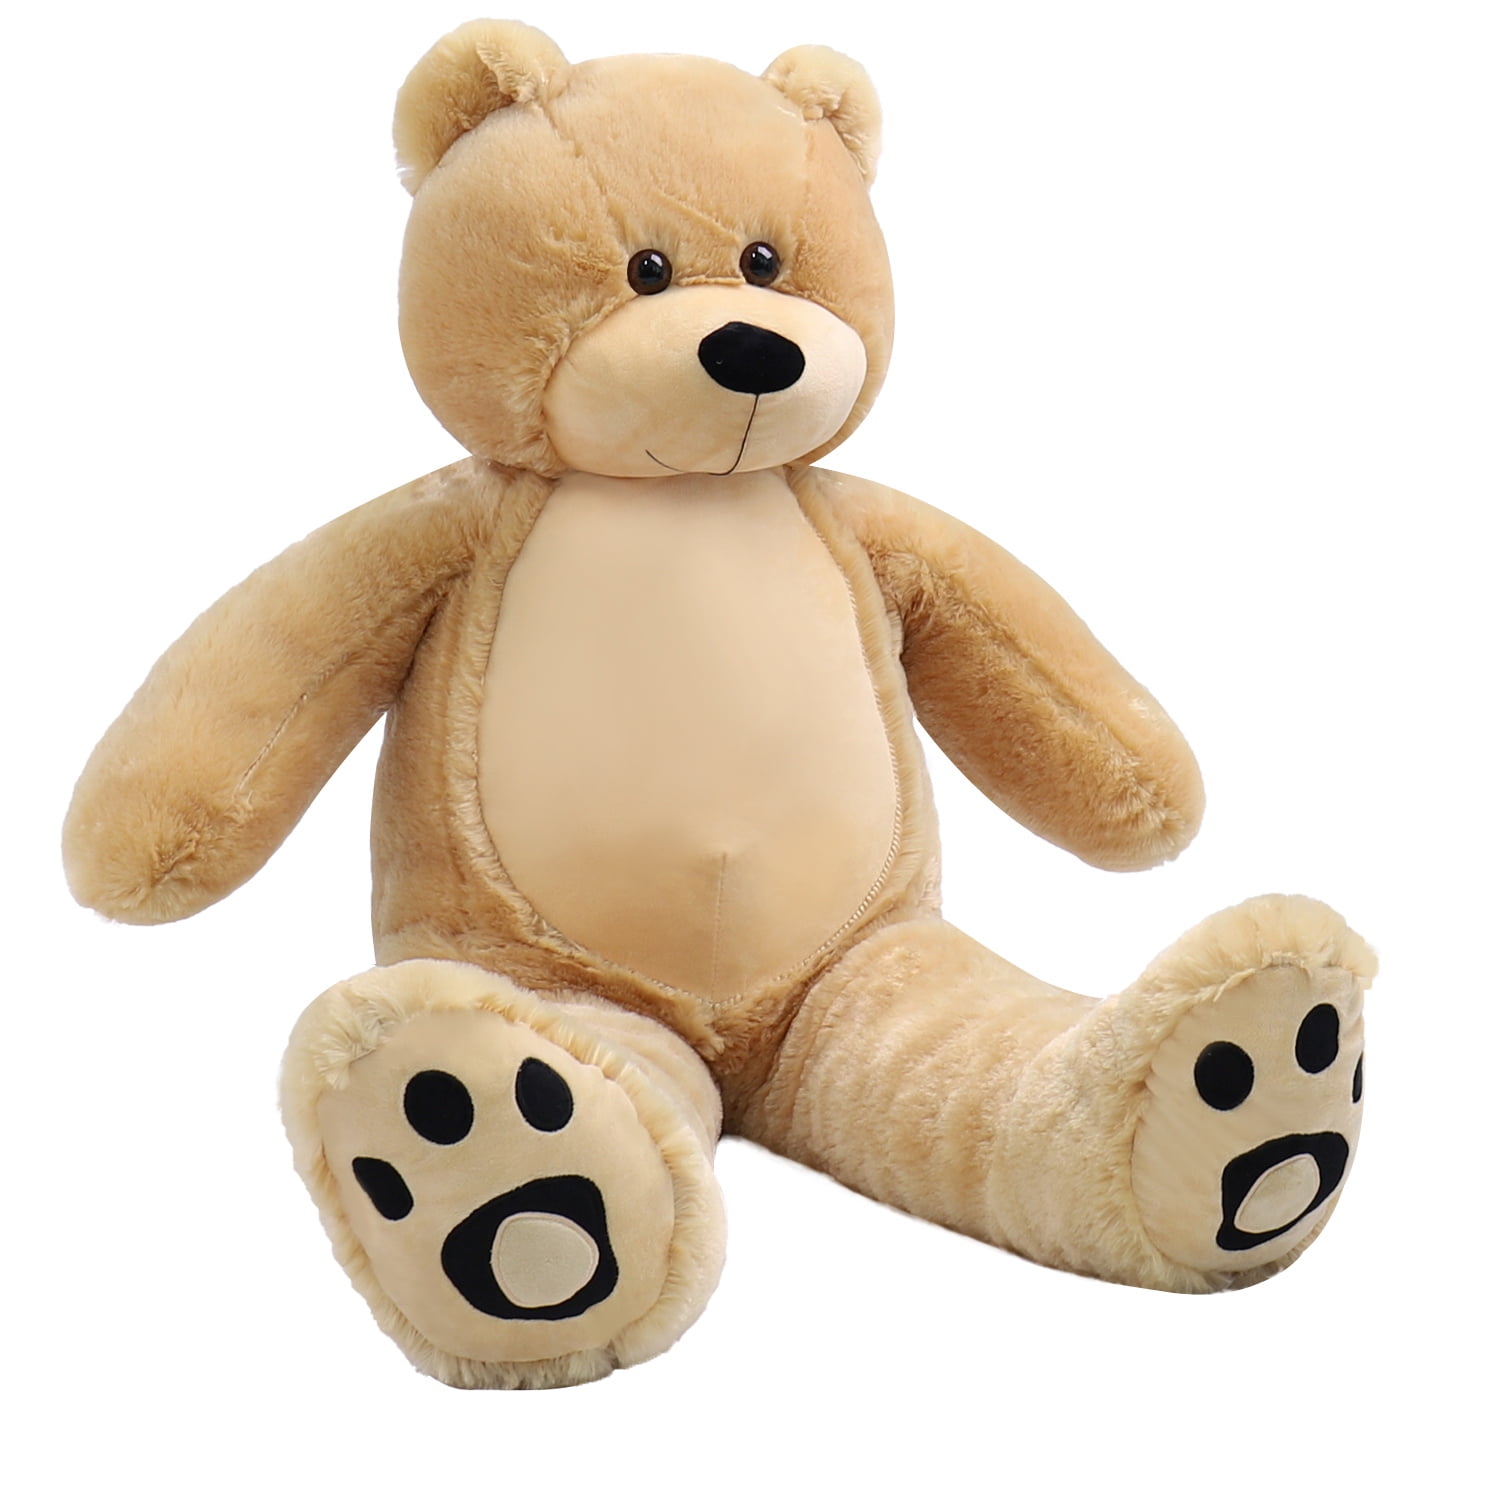 Washable Giant Teddy Bear Plush Stuffed Animals Big Footprints 39 Inches Cuddly 